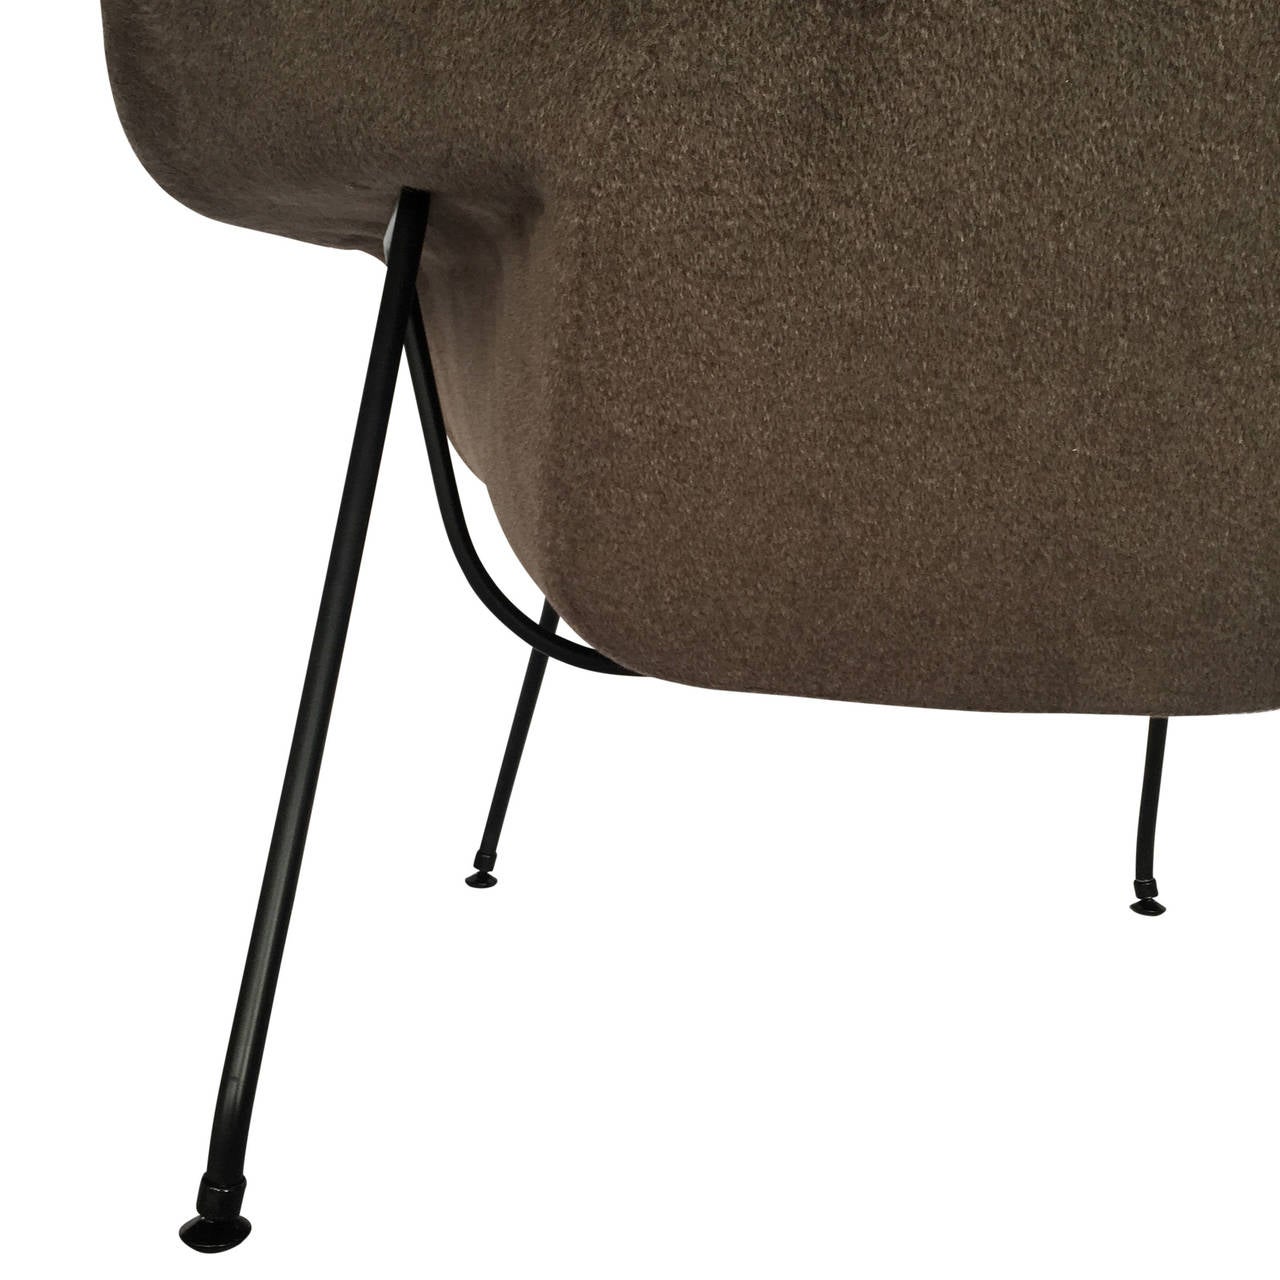 Mid-20th Century Loro Piana Alpaca Wool 'Womb' Chair by Eero Saarinen for Knoll Associates